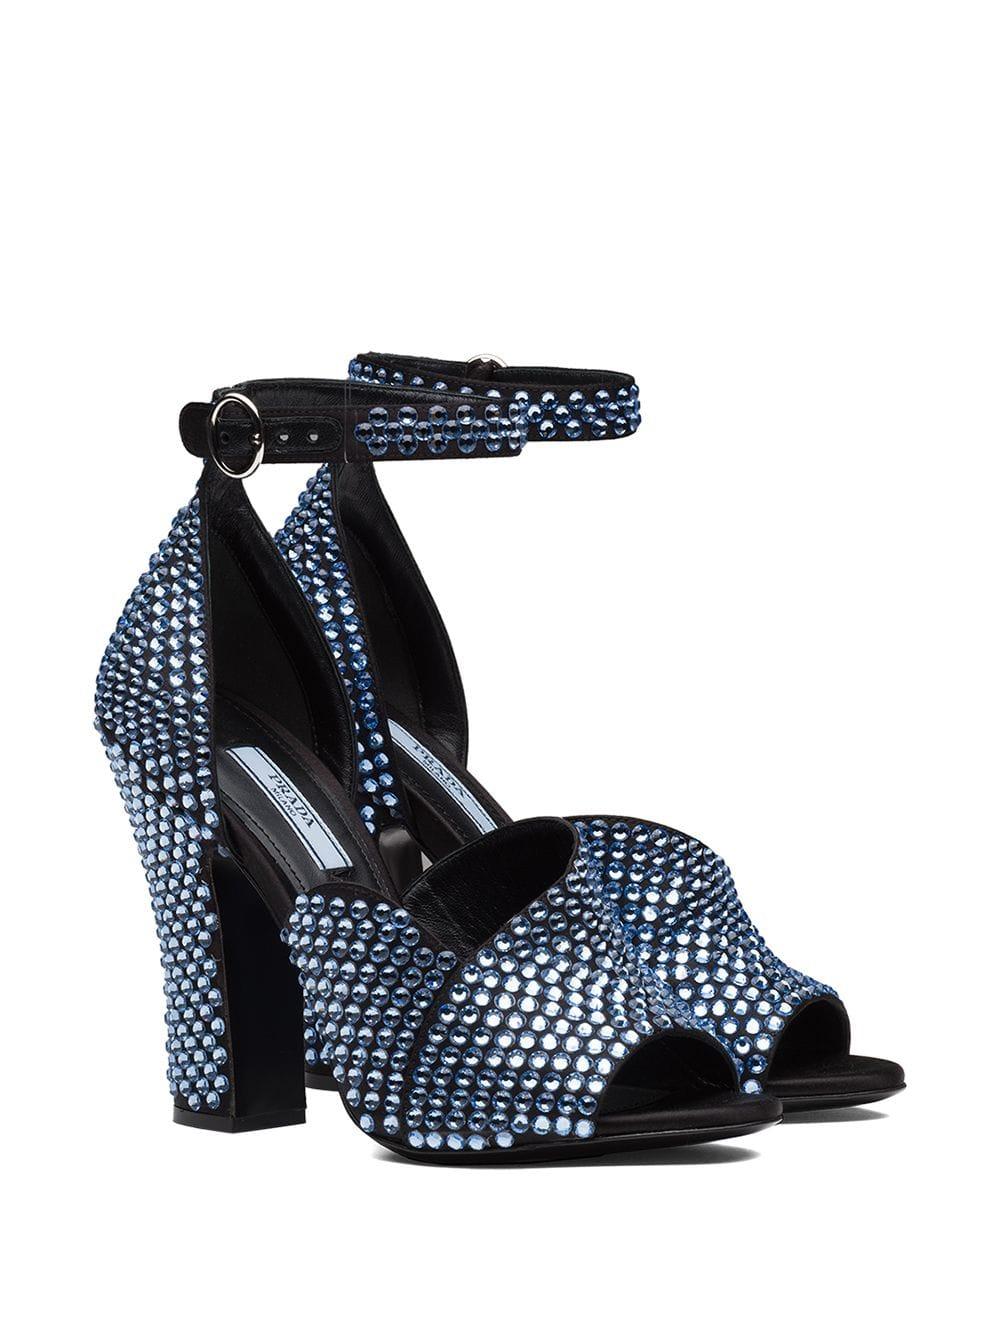 Elizée Shoes | The Crystal Sandal - Black Leather